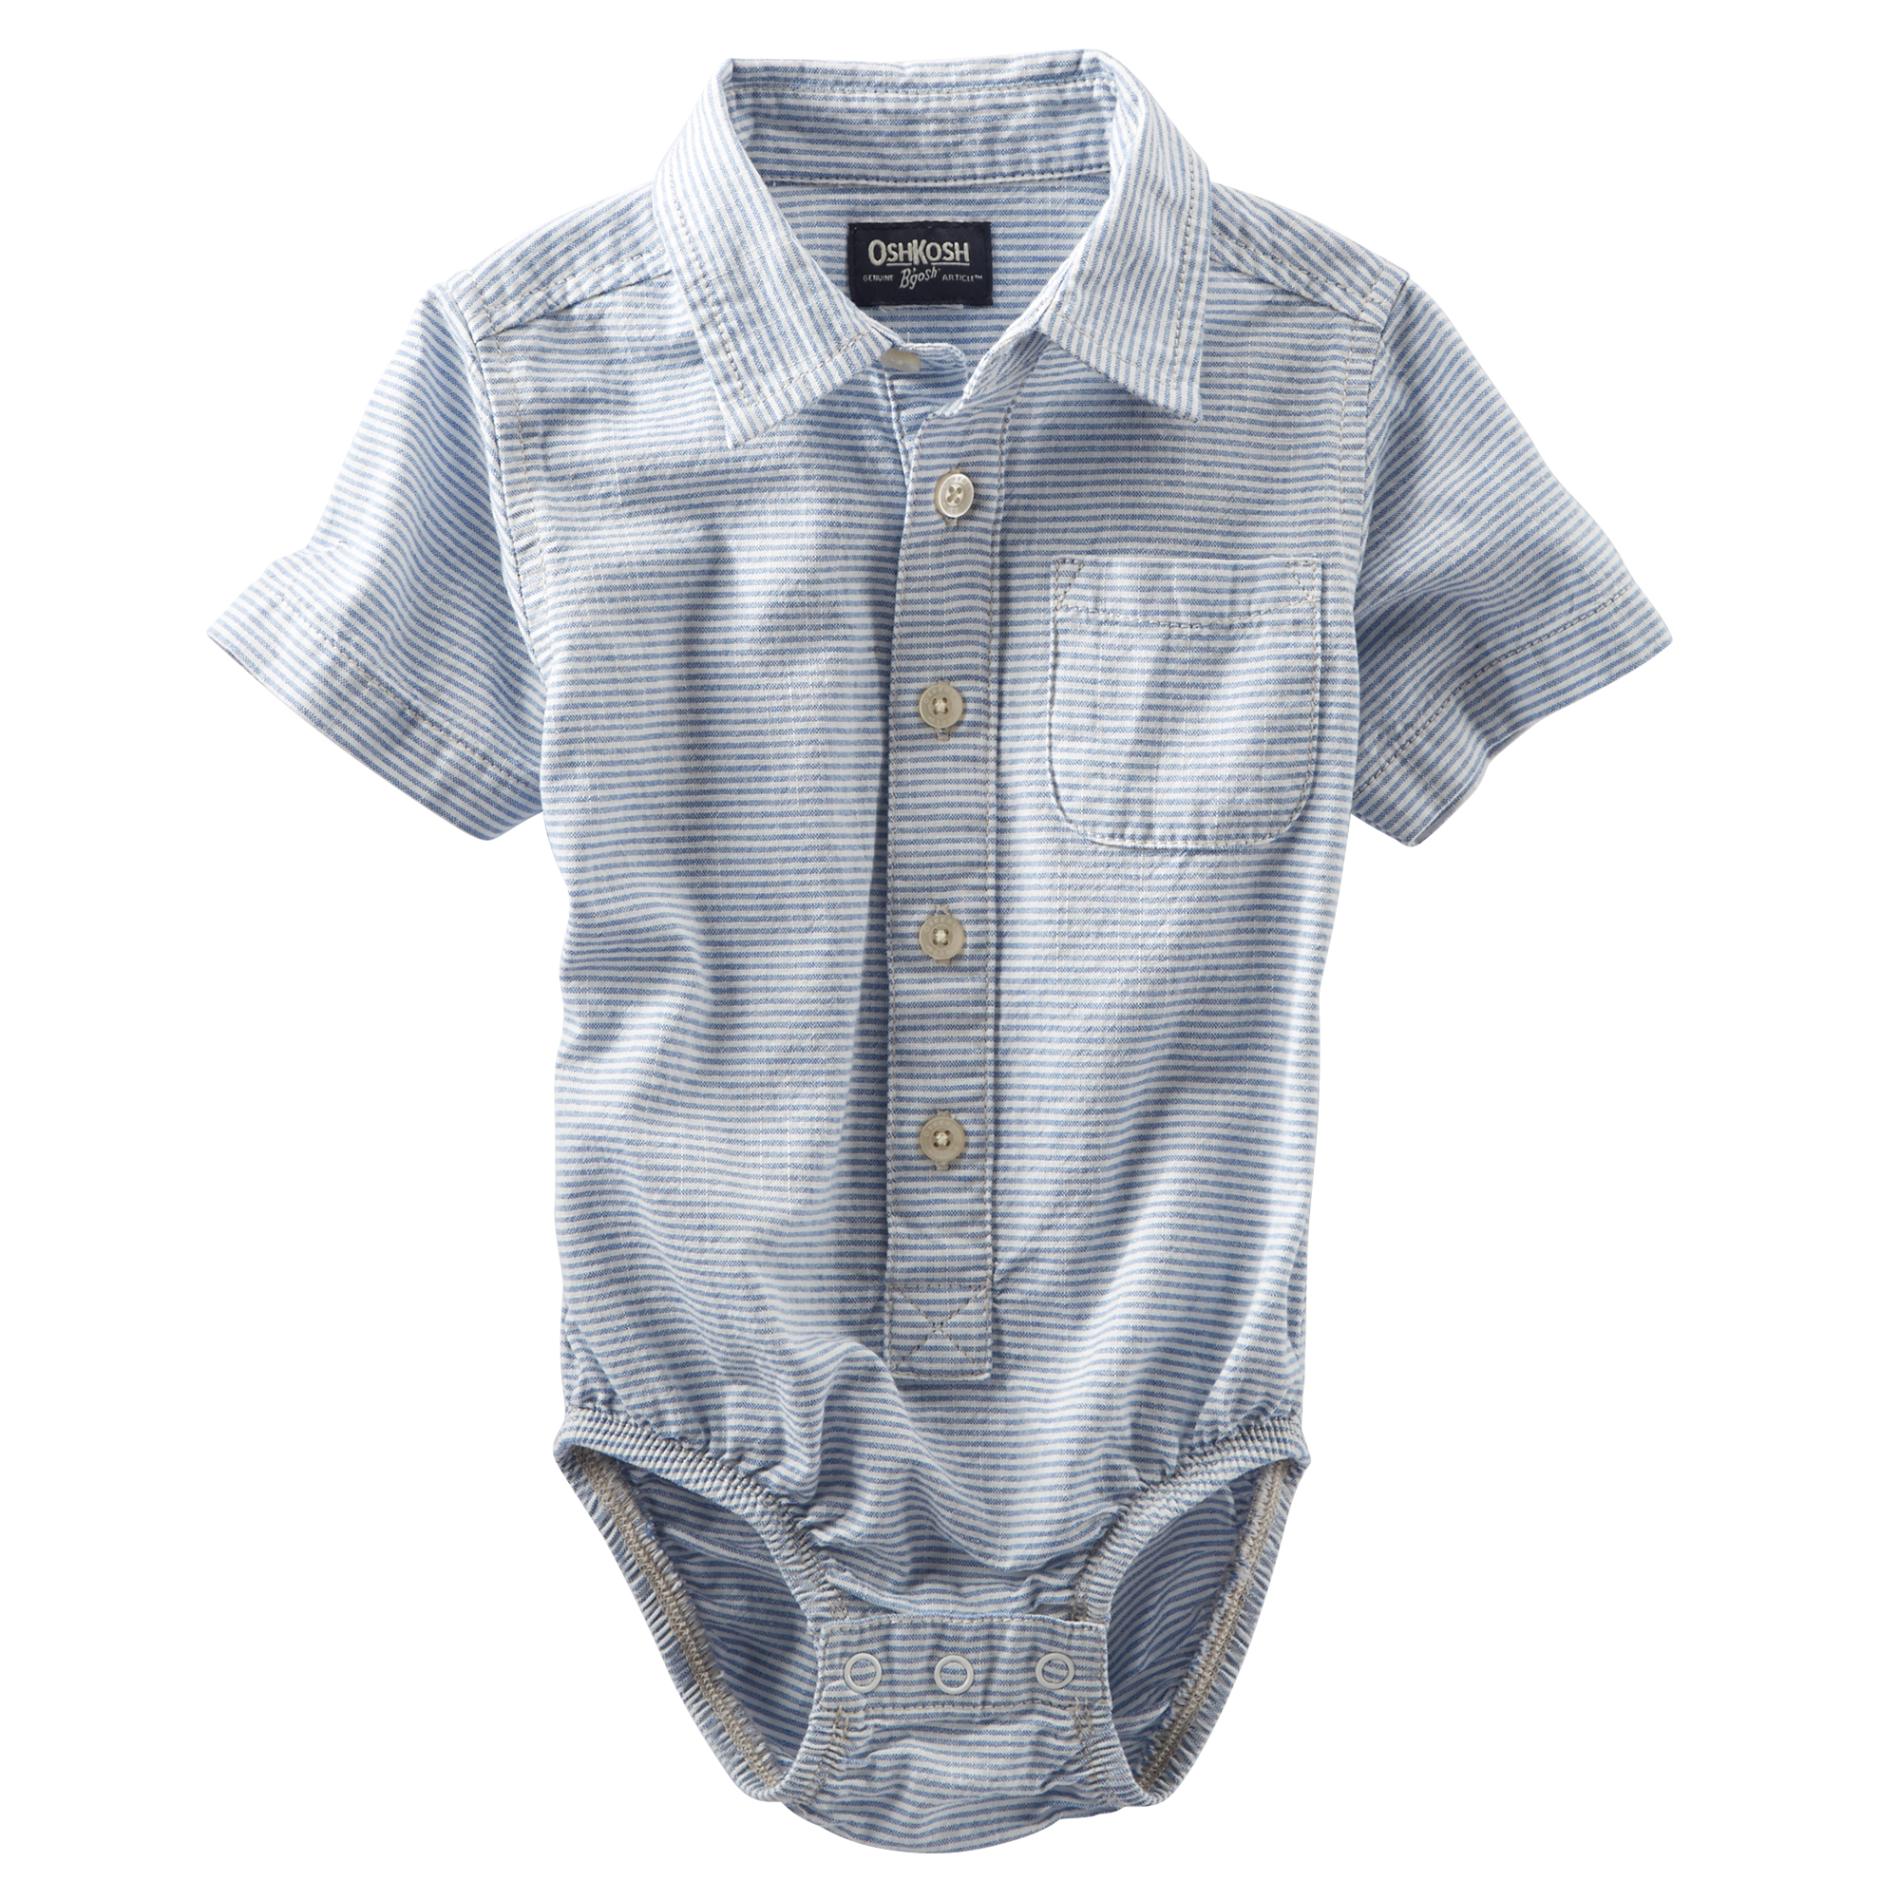 OshKosh Newborn & Infant Boy's Collared Bodysuit - Striped